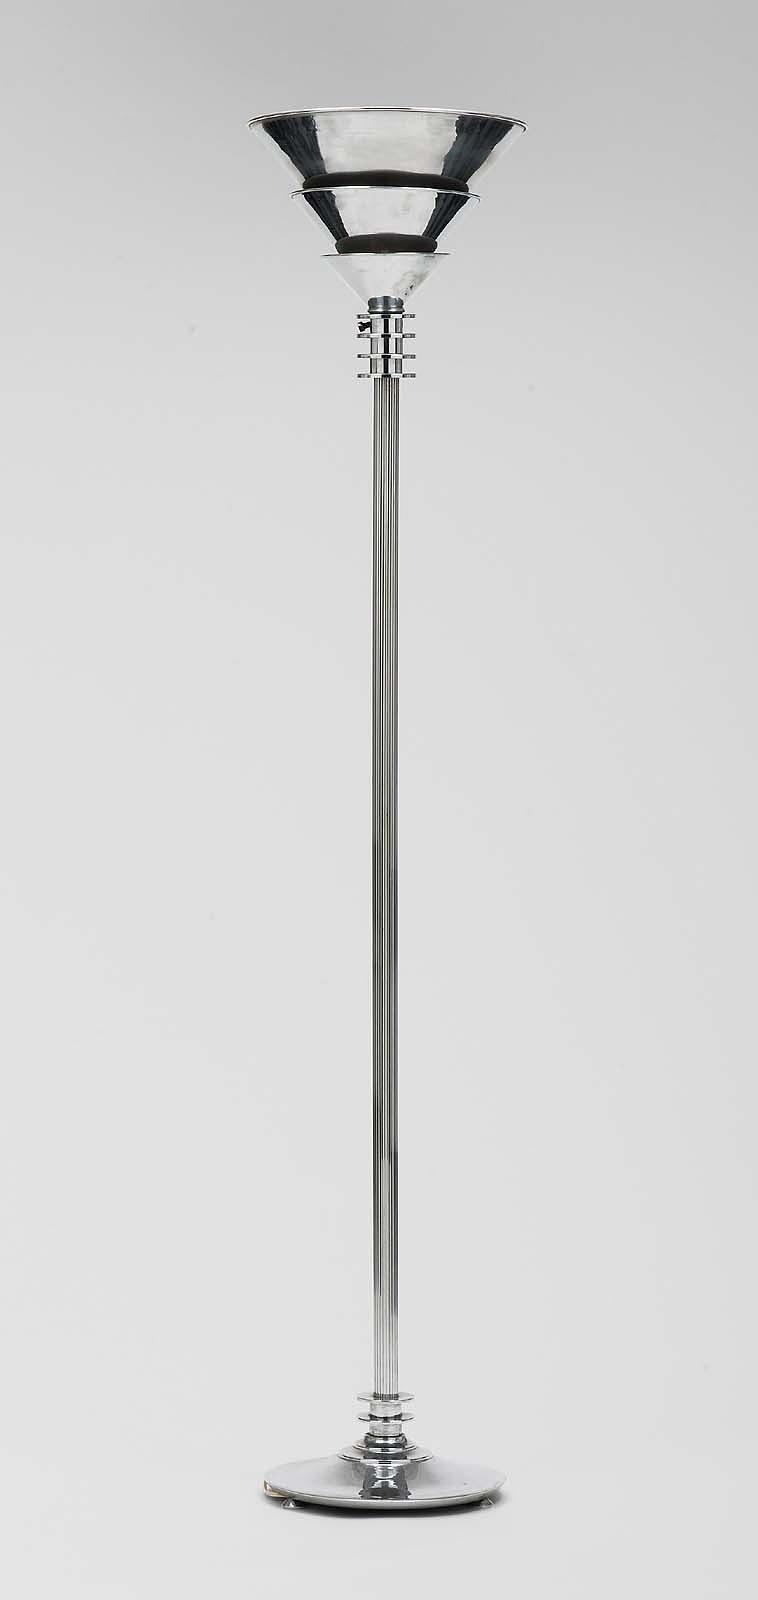 thumbChrome-plated lamp MFA# 1985.672